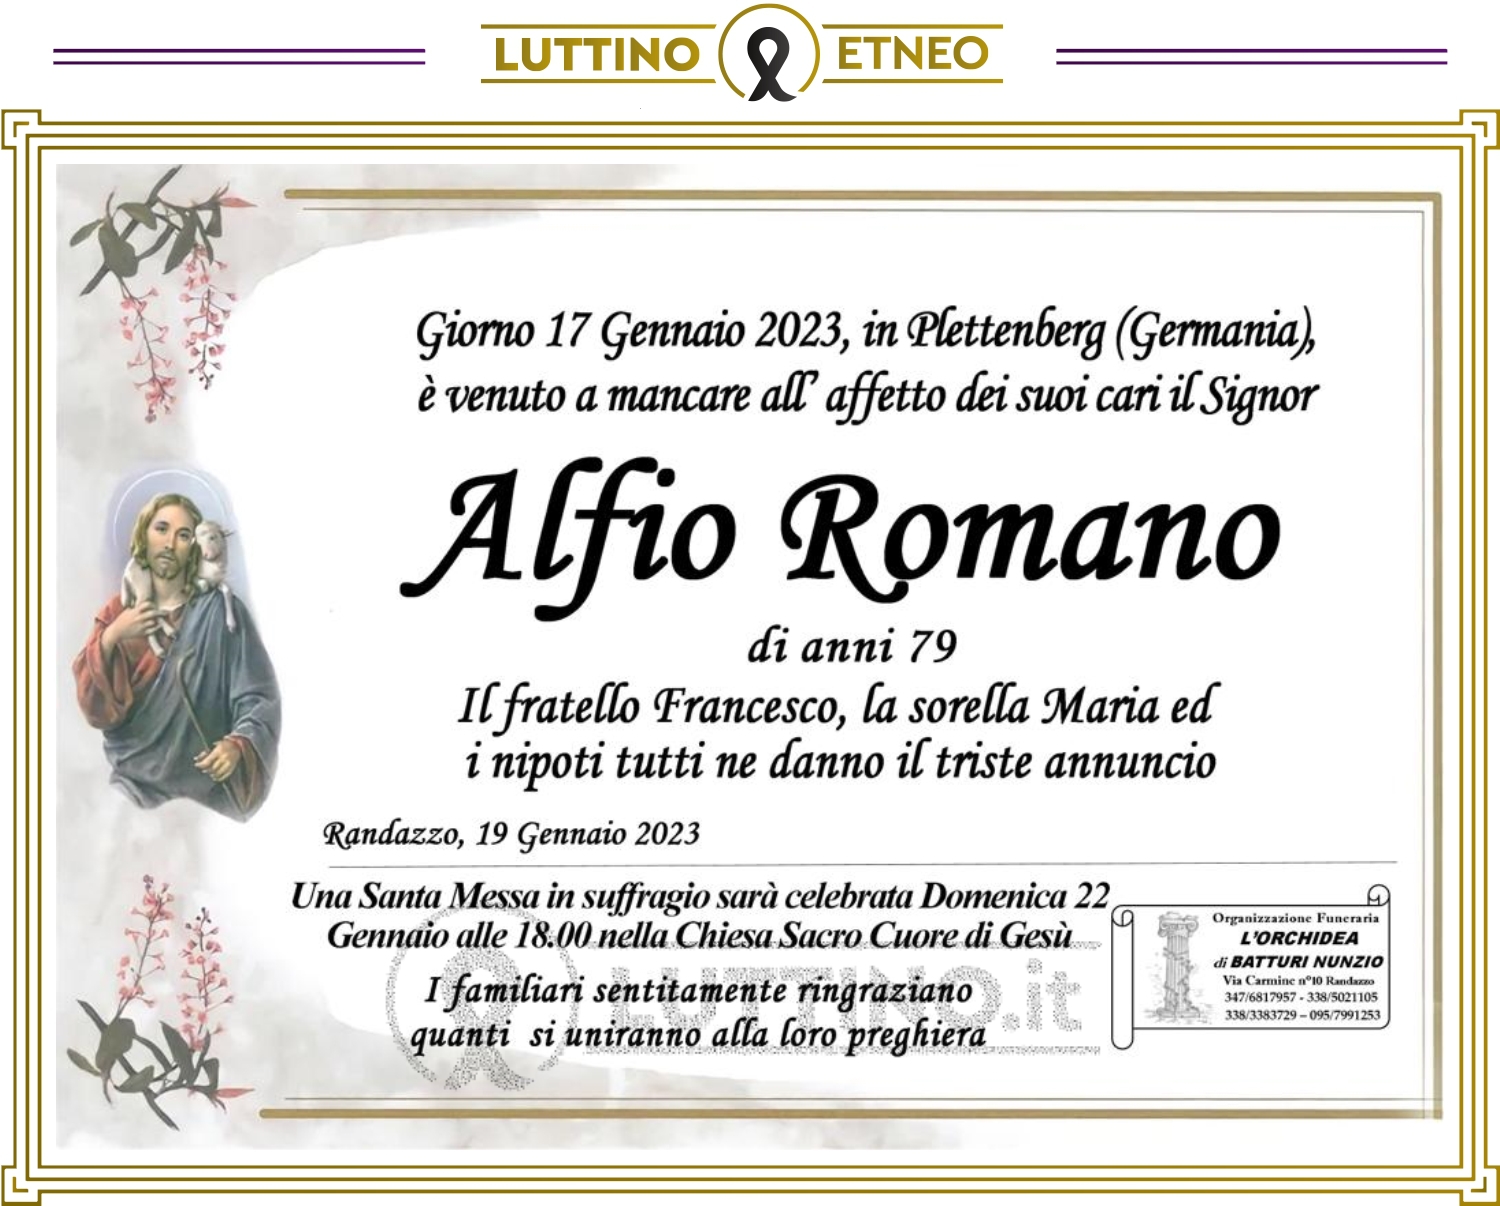 Alfio Romano